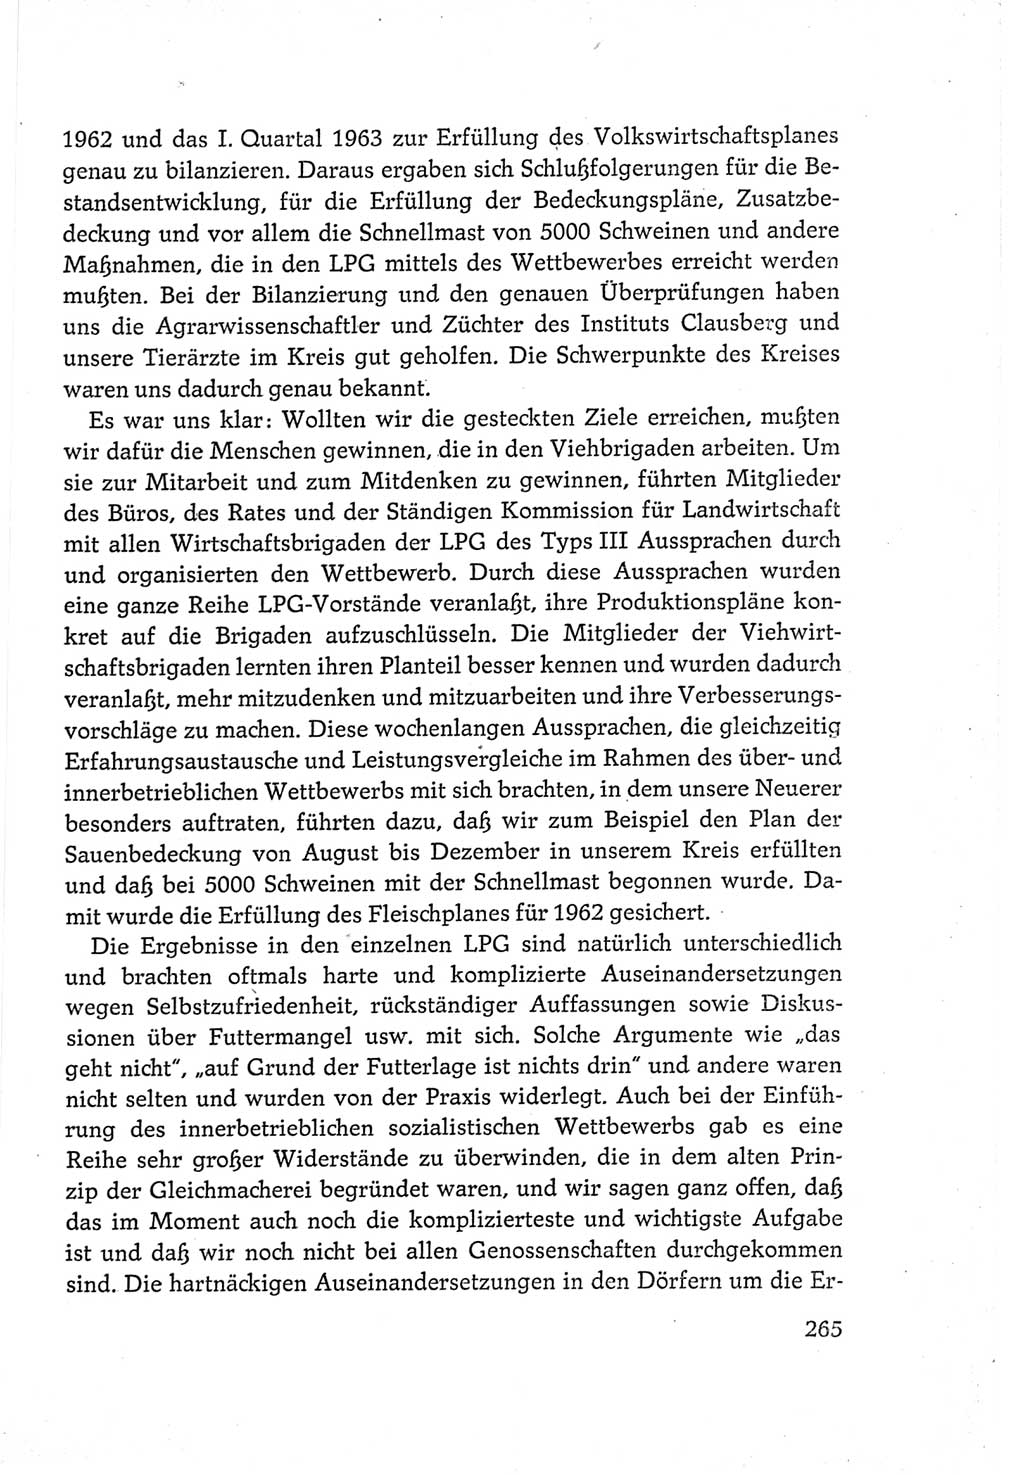 Protokoll der Verhandlungen des Ⅵ. Parteitages der Sozialistischen Einheitspartei Deutschlands (SED) [Deutsche Demokratische Republik (DDR)] 1963, Band Ⅲ, Seite 265 (Prot. Verh. Ⅵ. PT SED DDR 1963, Bd. Ⅲ, S. 265)